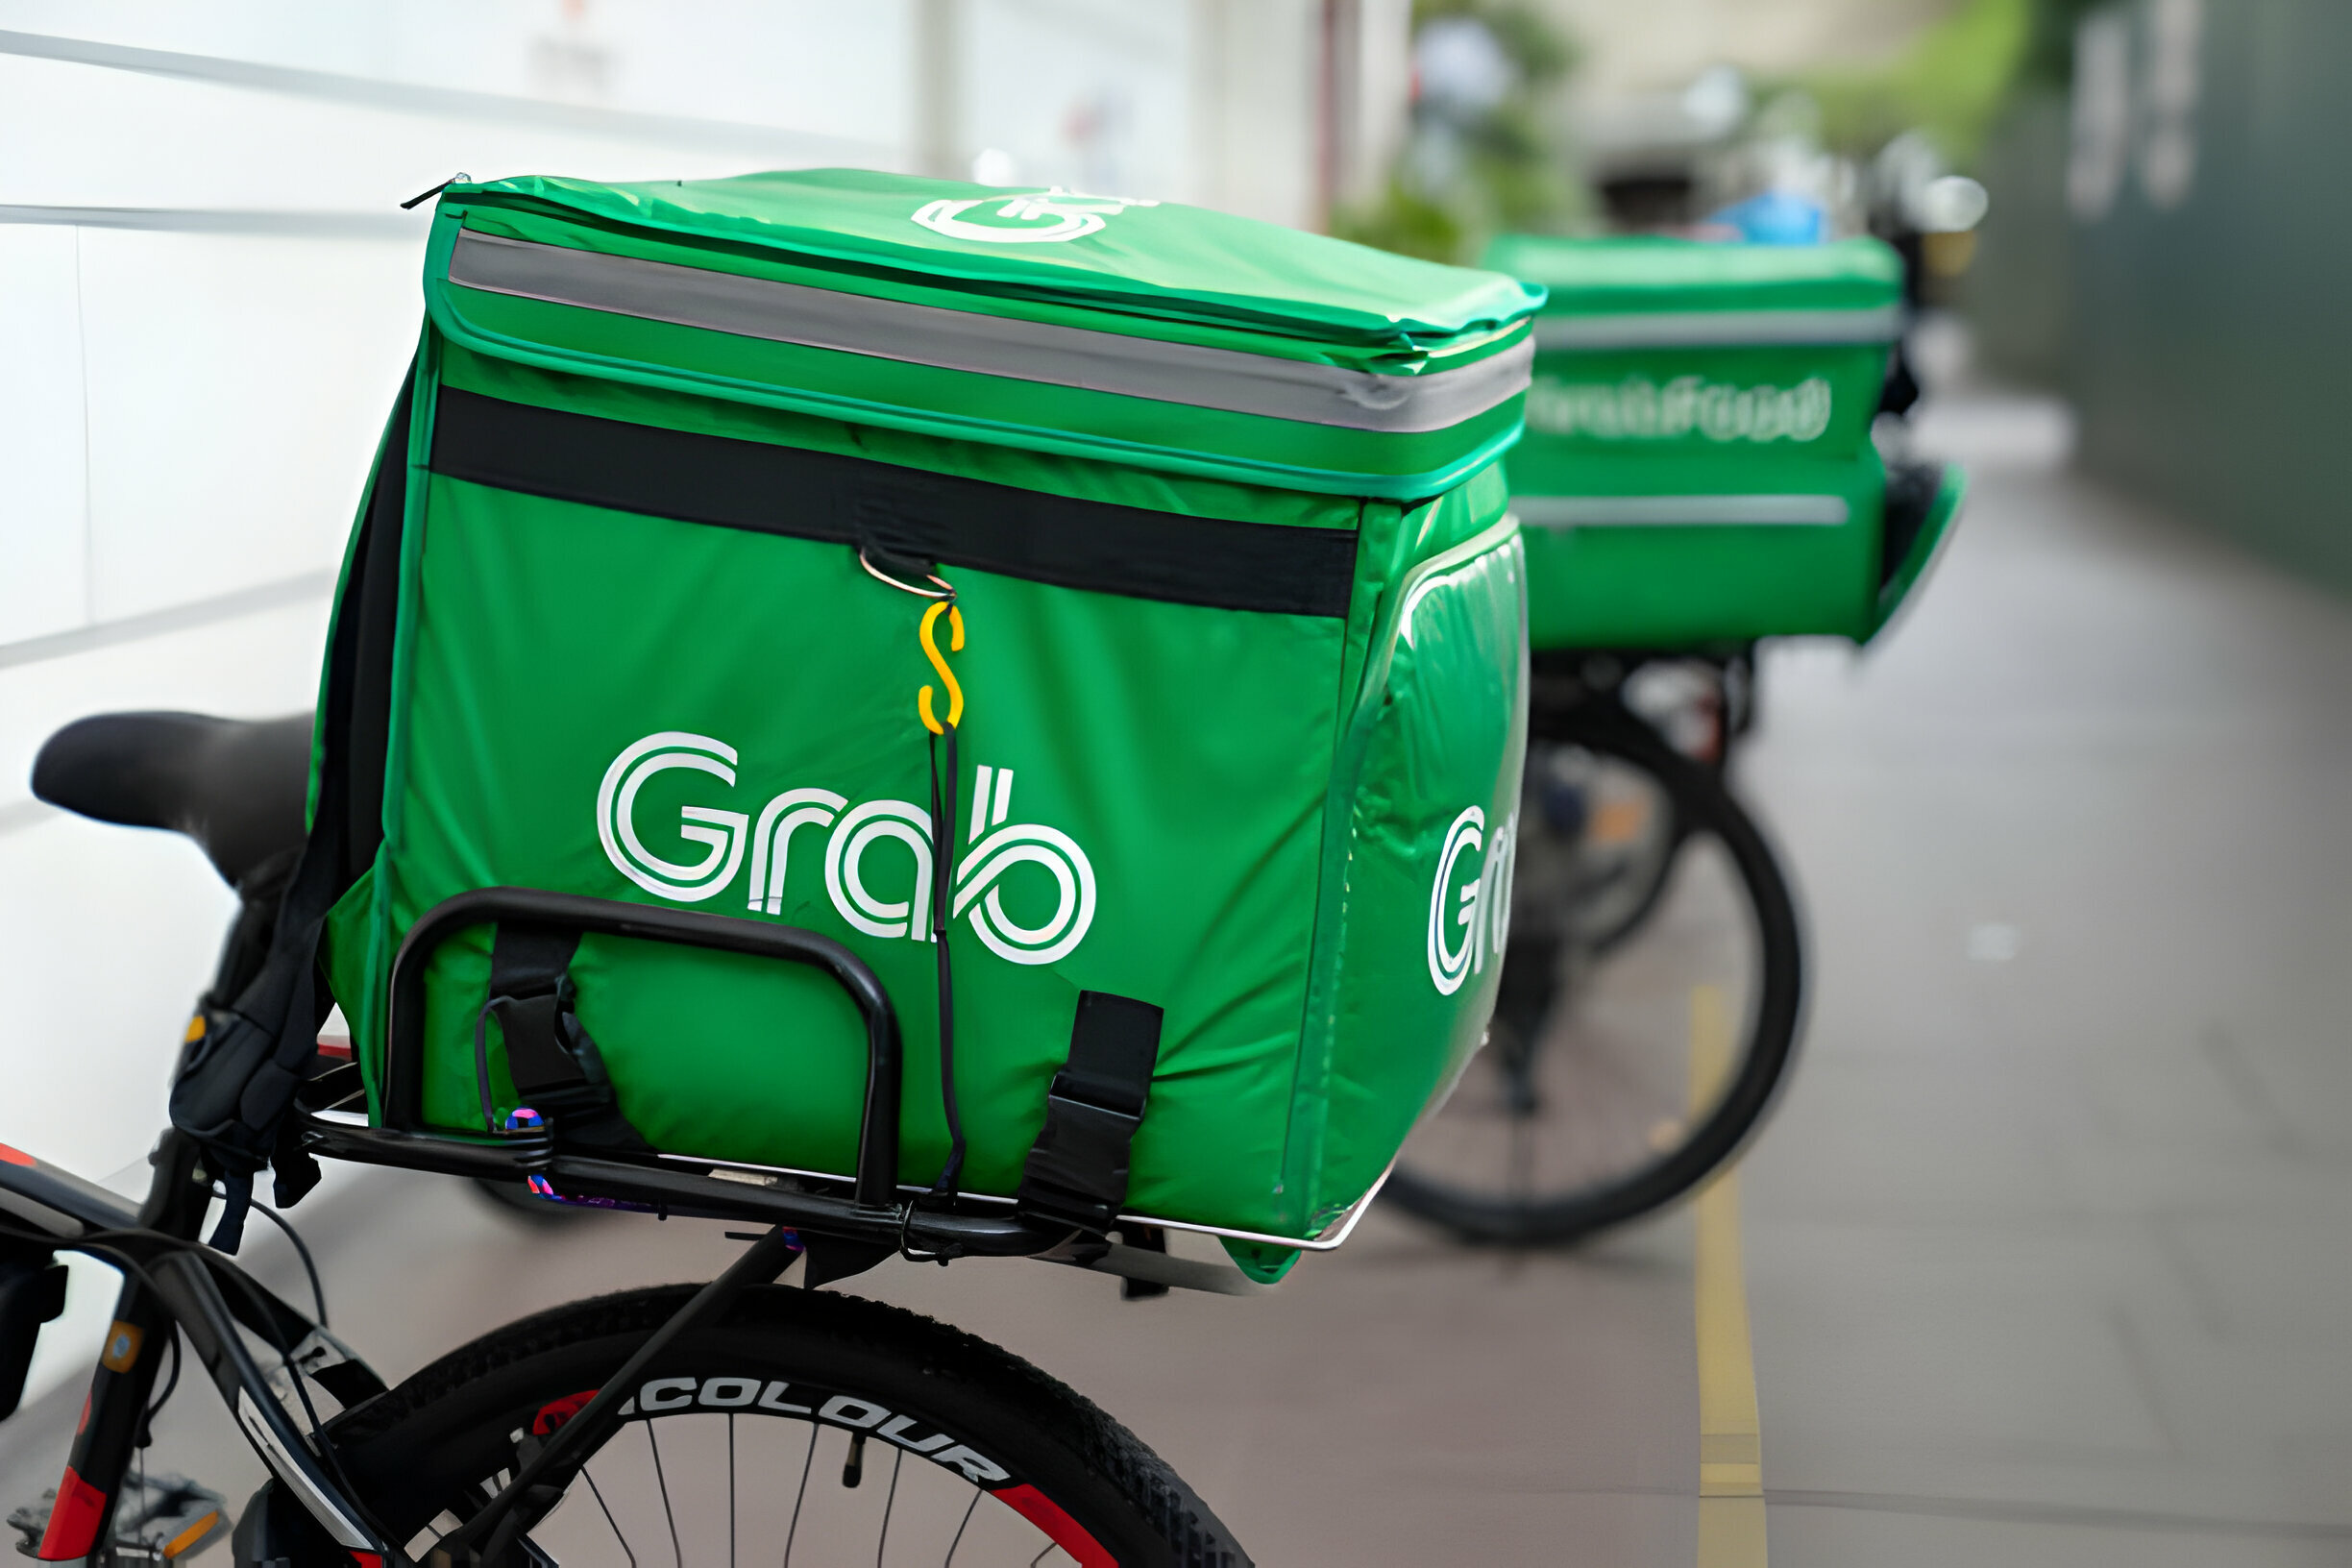 Sacs de livraison Grab verts fixés sur des vélos en stationnement